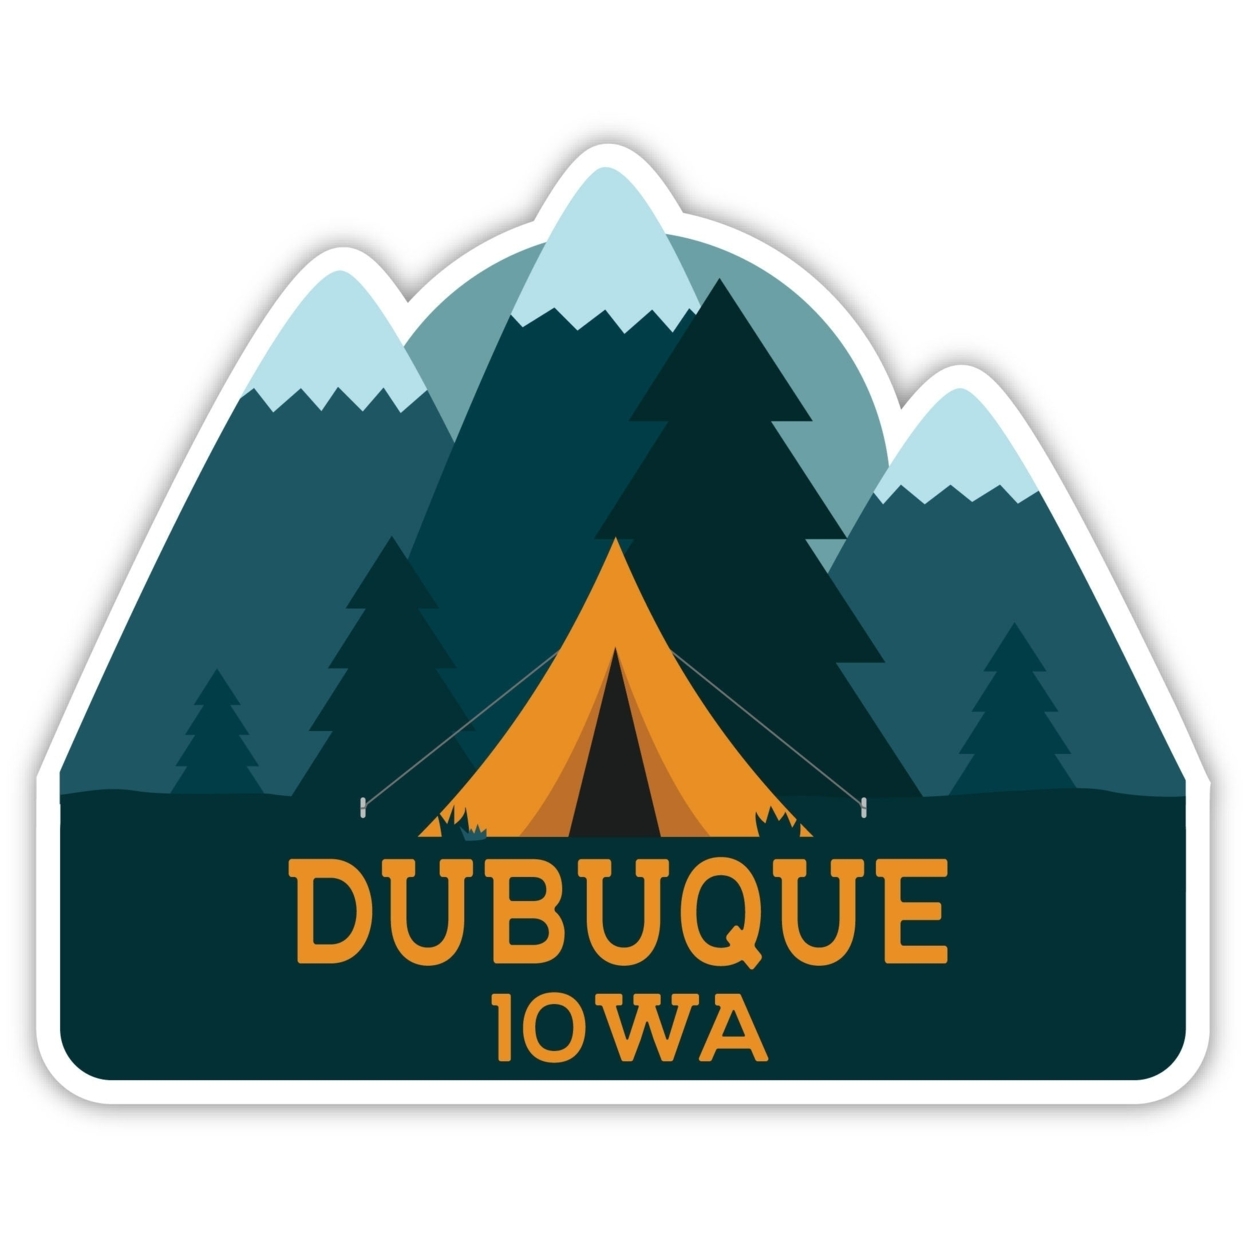 Dubuque Iowa Souvenir Decorative Stickers (Choose Theme And Size) - Single Unit, 12-Inch, Tent